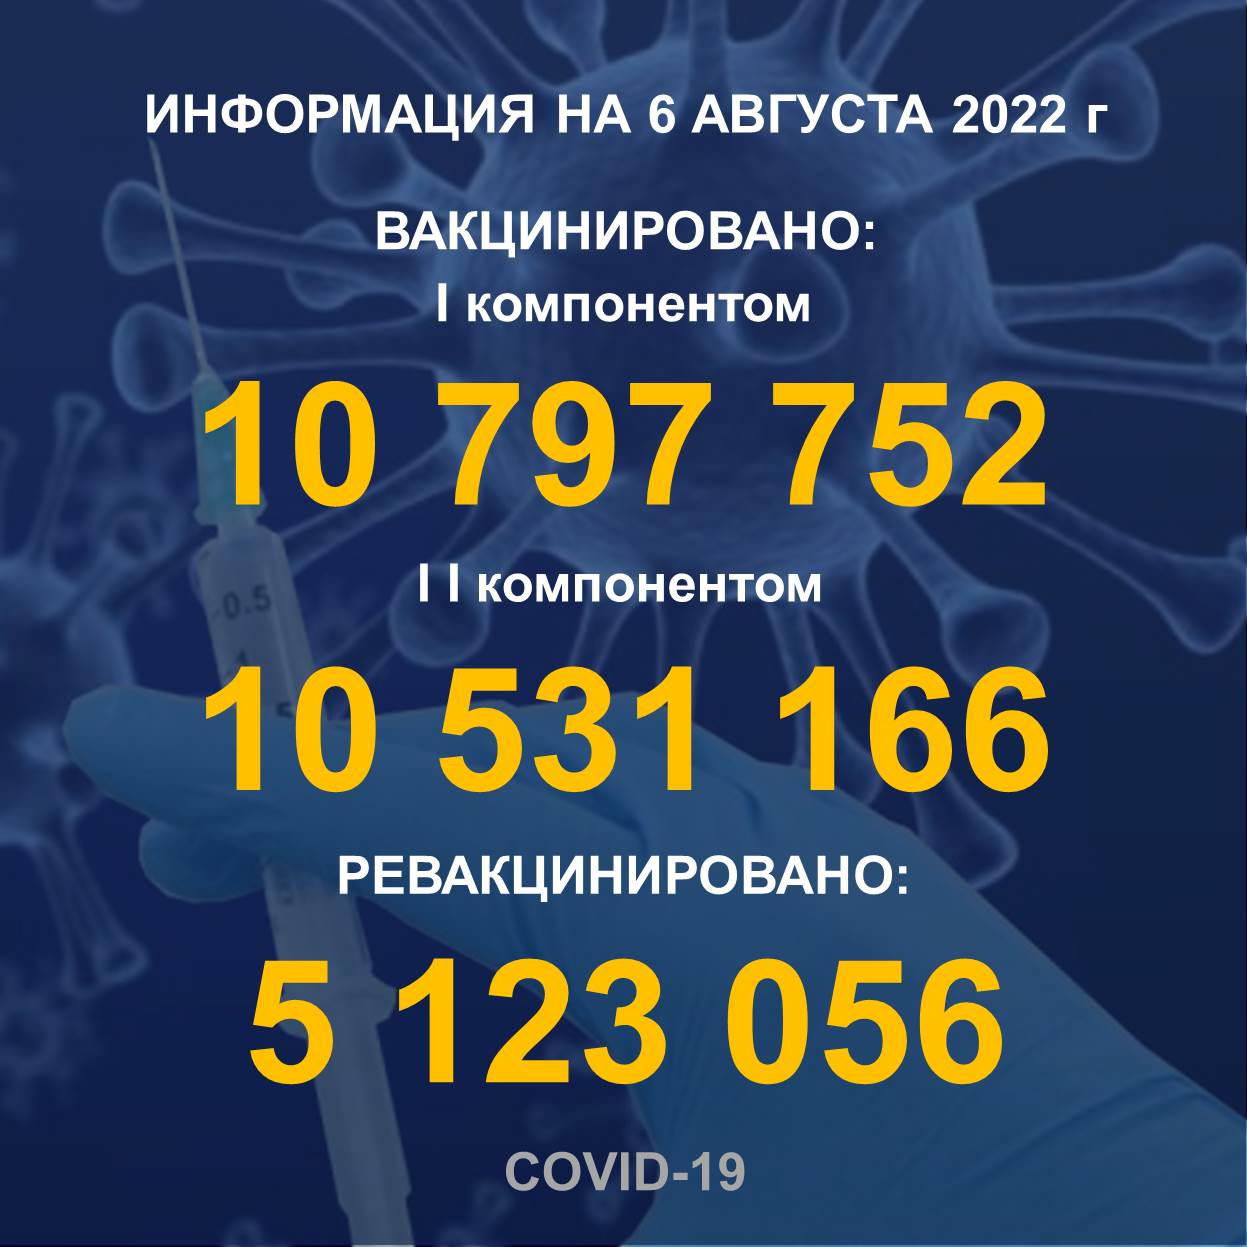 Информация о проведении вакцинации населения против КВИ на 7.08.2022 г. в разрезе регионов